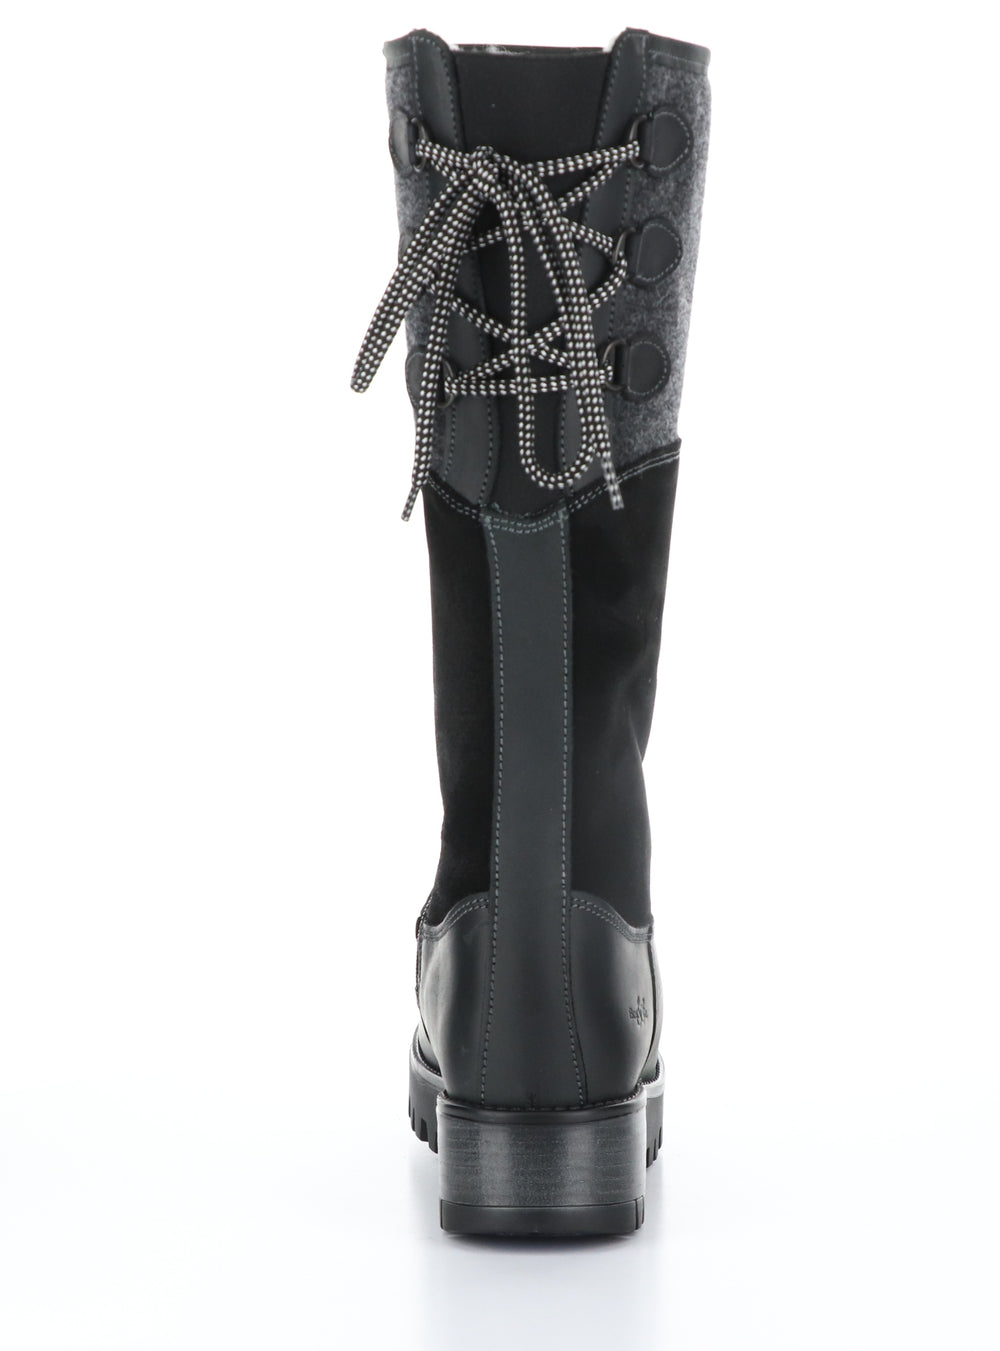 GOOSE PRIMA Black/Black Zip Up Boots|GOOSE PRIMA Bottes avec Fermeture Zippée in Noir